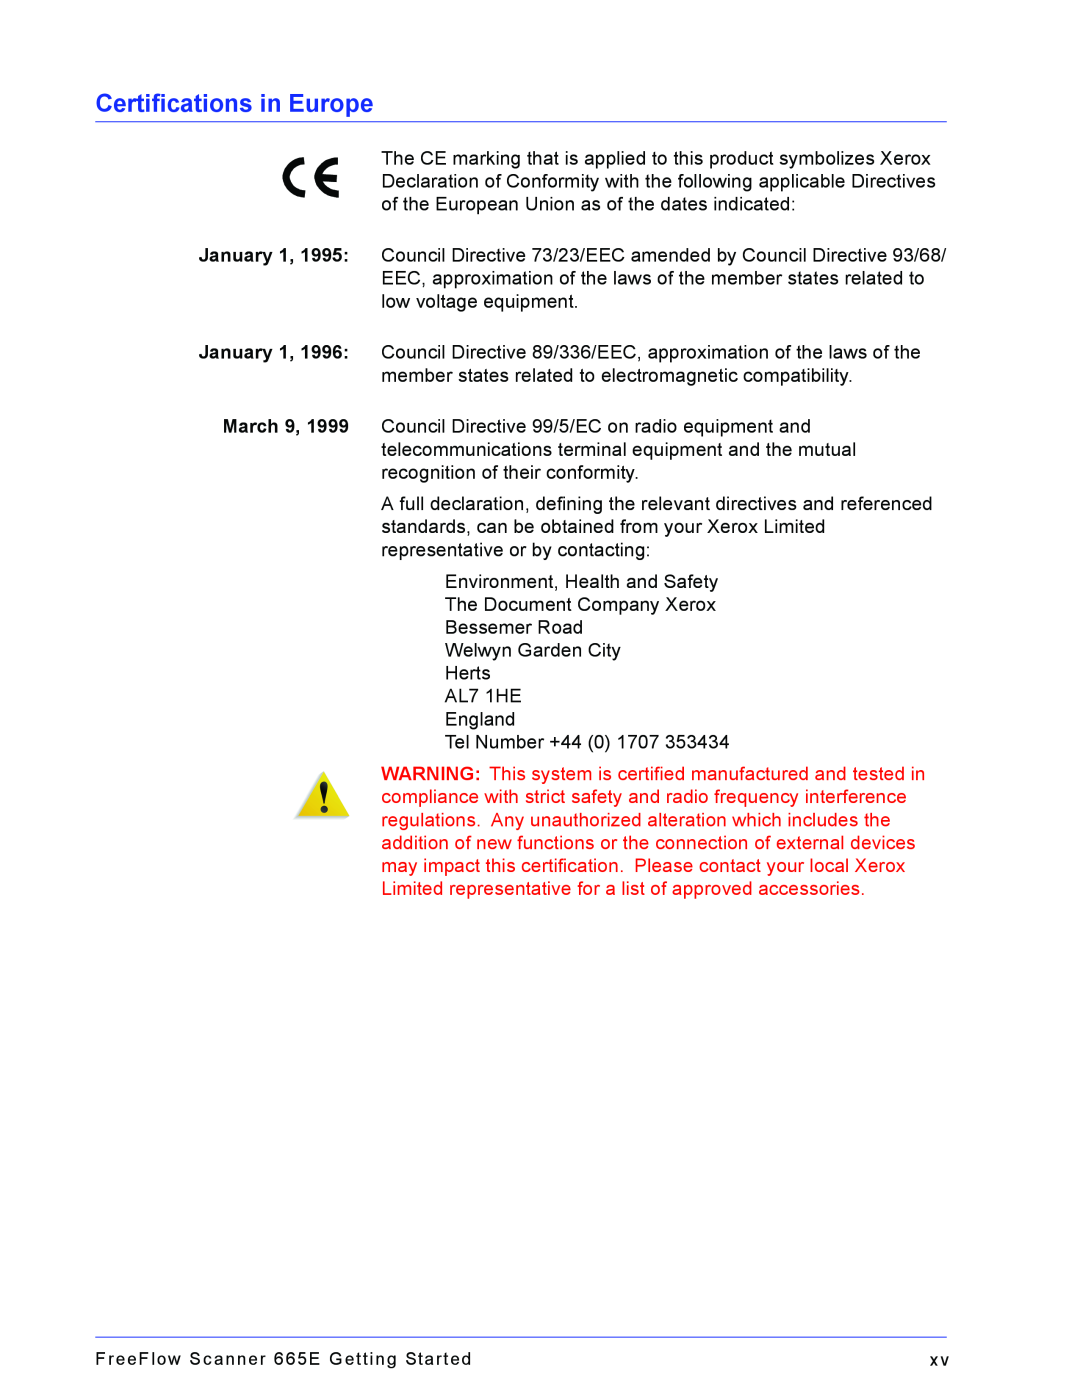 Xerox 665E manual Certifications in Europe 